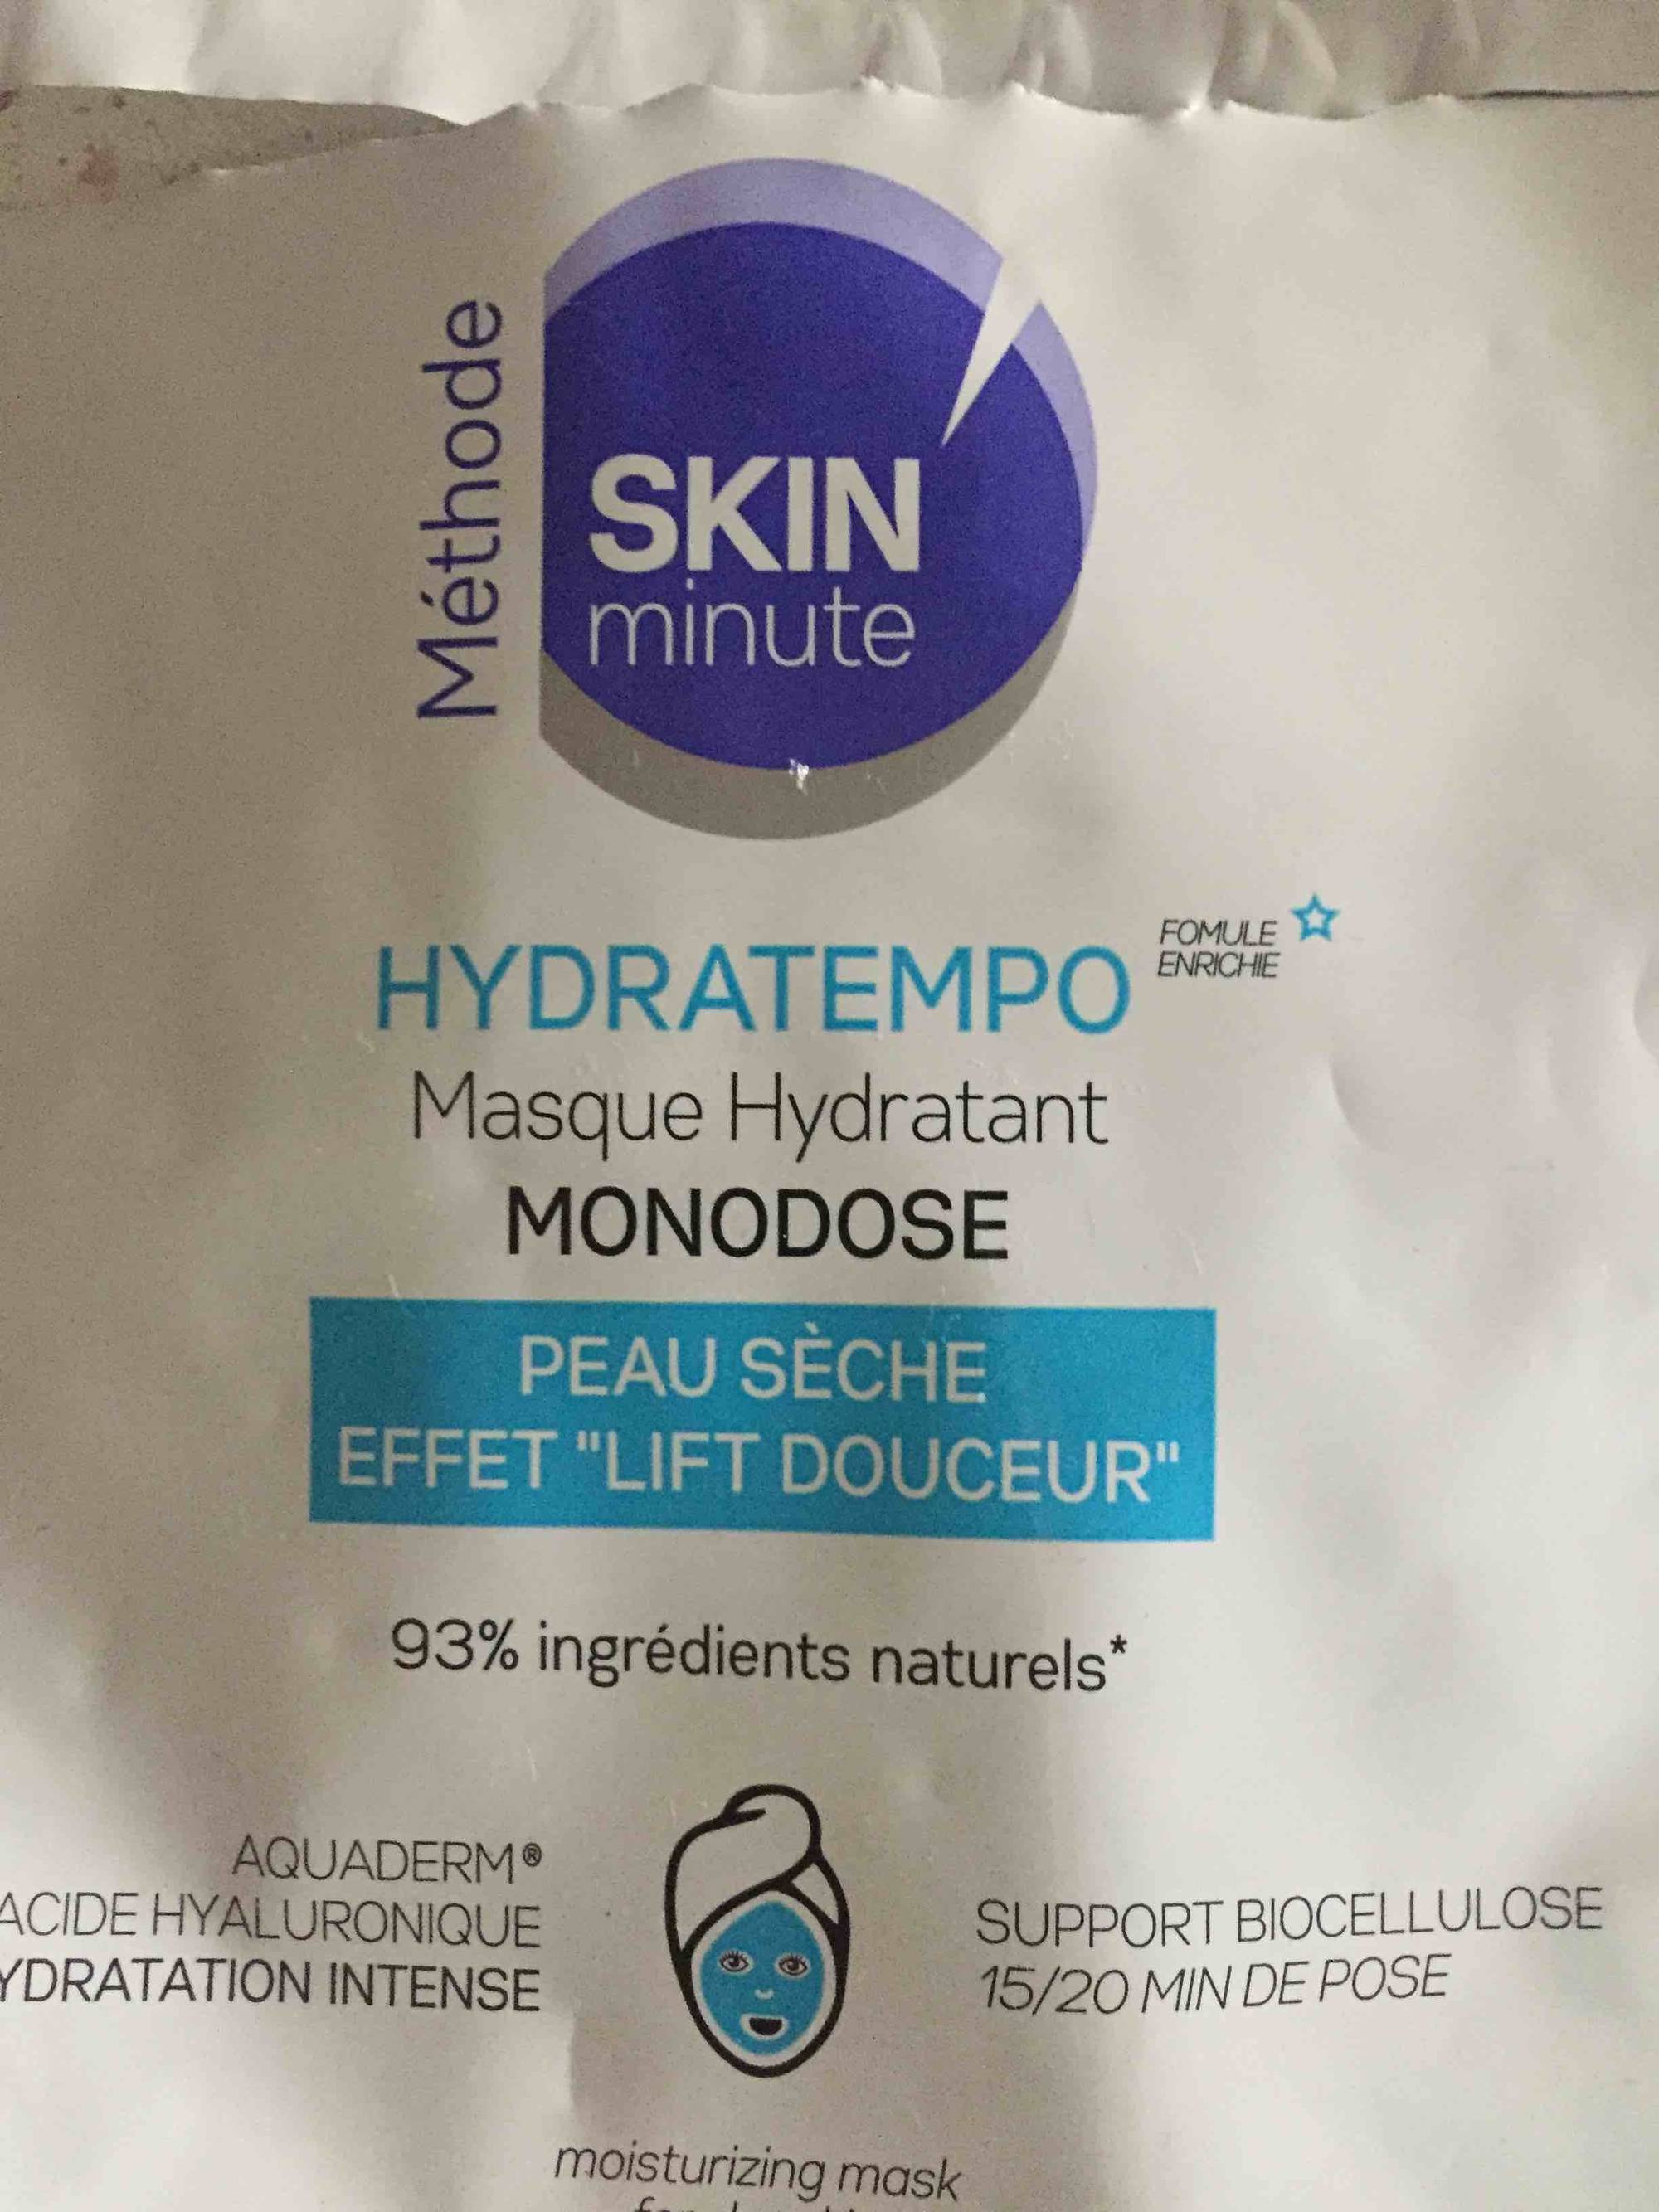 SKIN MINUTE - Hydratempo - Masque hydratant monodose